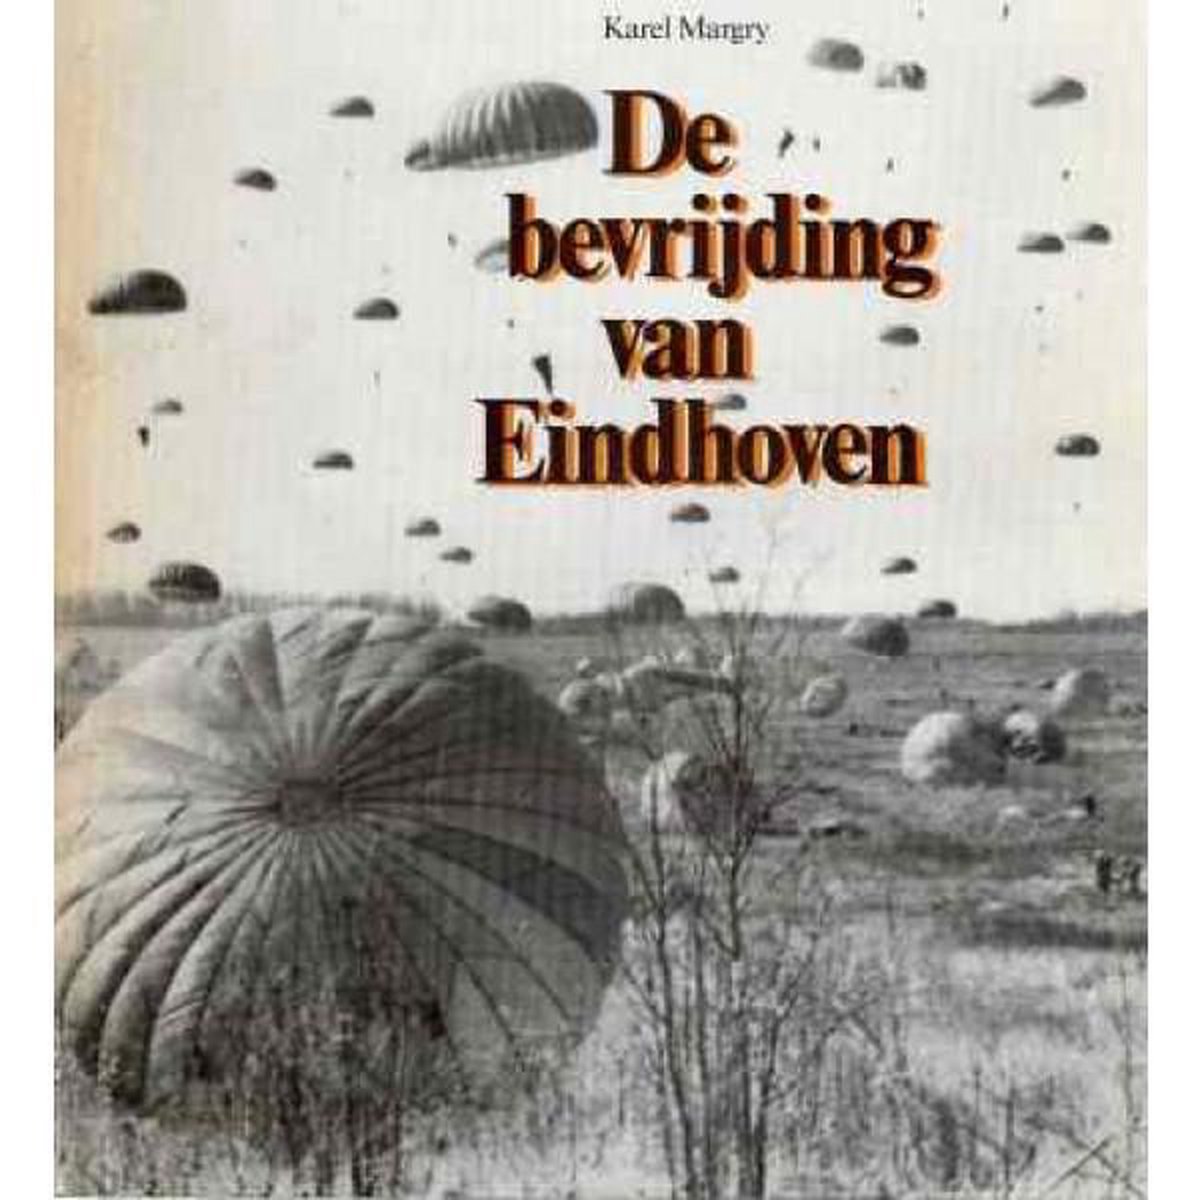 De bevrijding van Eindhoven